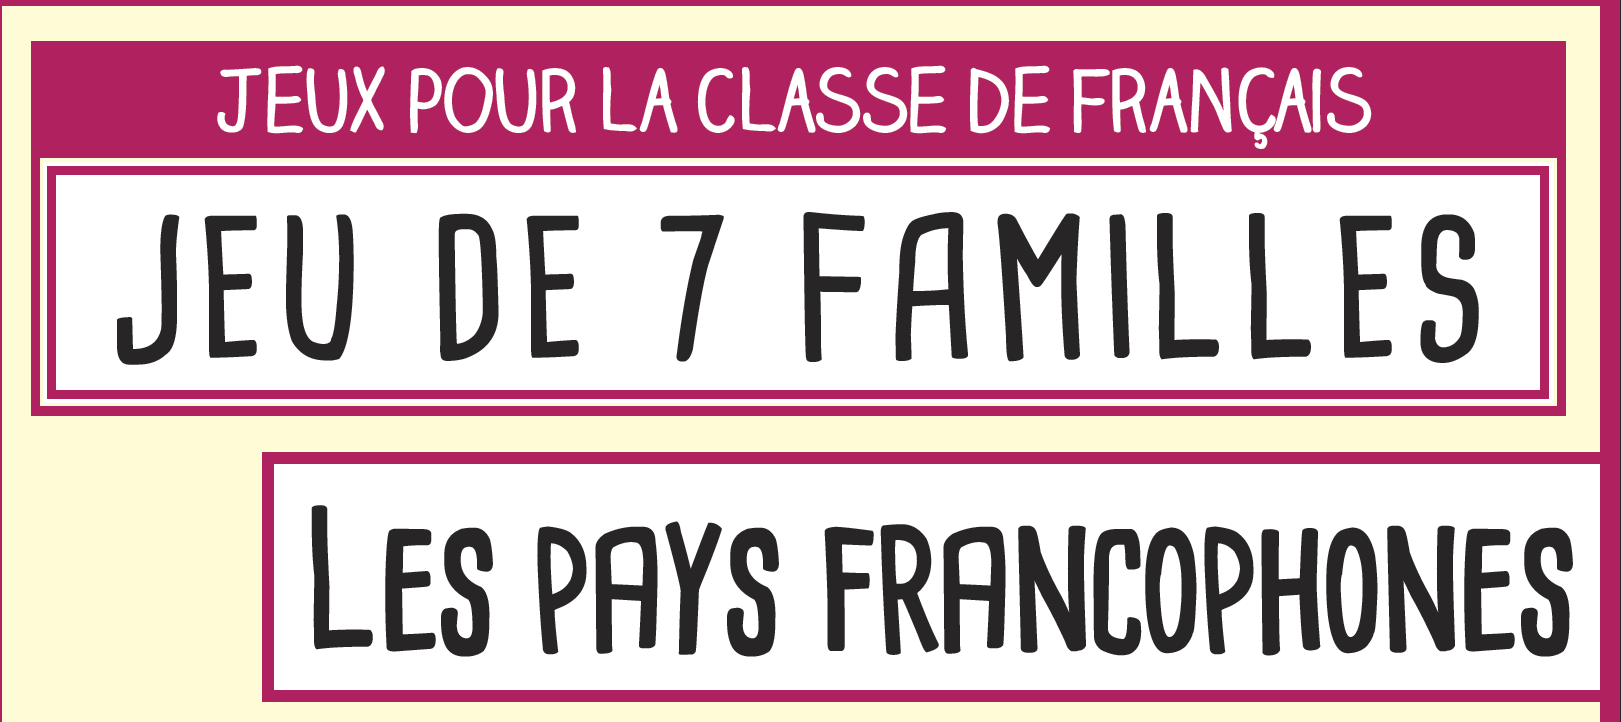 Jeu des sept familles sur les pays francophones